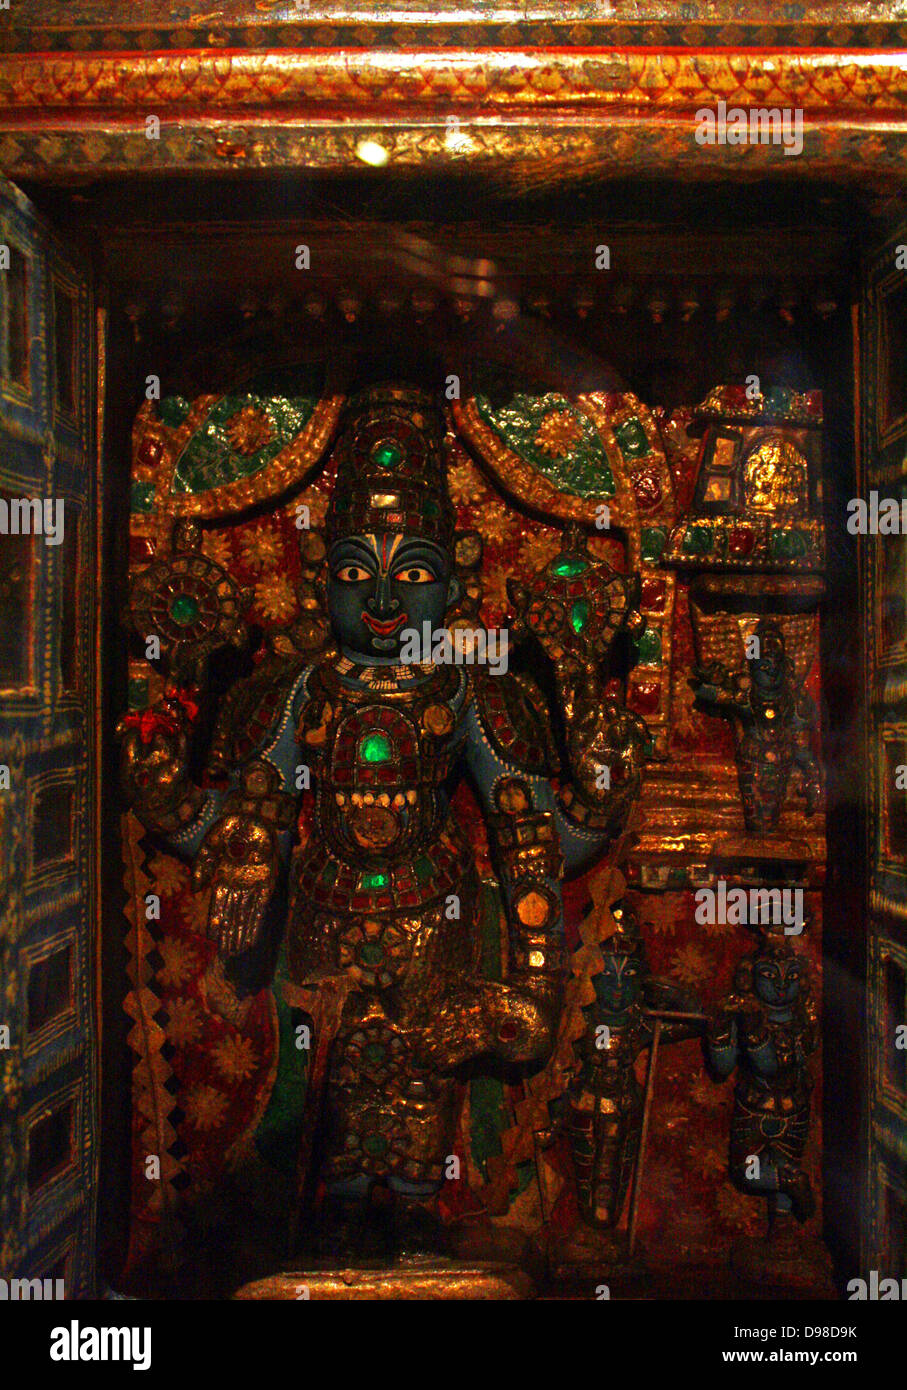 Sanctuaire Portable de Vishnu comme Venkateshwara, peint et bois laqué et autres matériaux, Tirupati, Tamilnadu, vers 1800. Sanctuaires portables ont été utilisés par les prêtres qui raconte les histoires de Vishnu et de ses incarnations. Le sanctuaire a portes pliantes extensible peints avec des scènes de Vishnu dans ses diverses formes, l'histoire de Rama et de Krishna et d'autres sujets. Banque D'Images